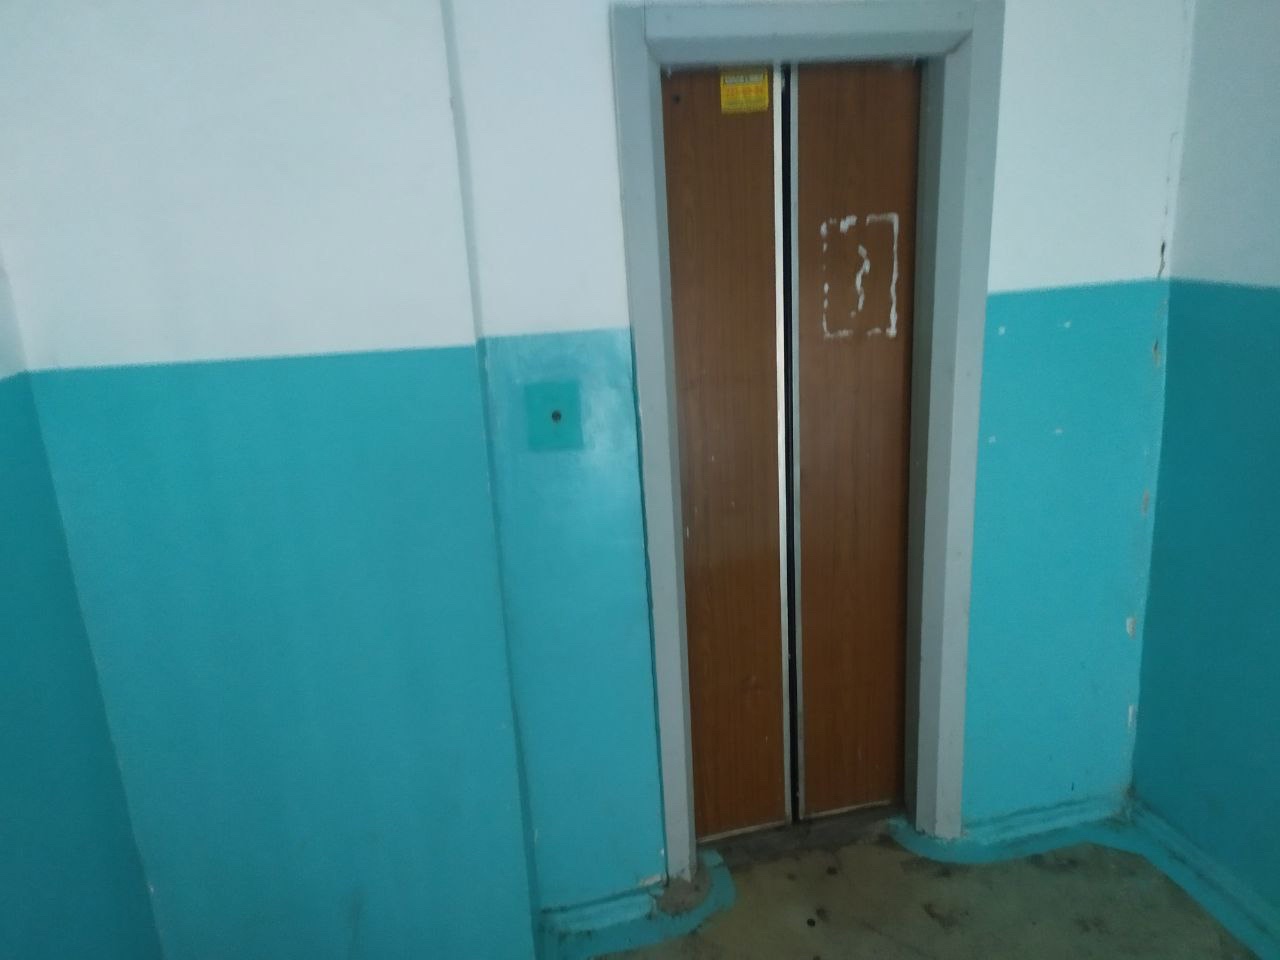 Неделями не выходят на улицу: жильцы многоэтажки в Челябинске остались без лифта 